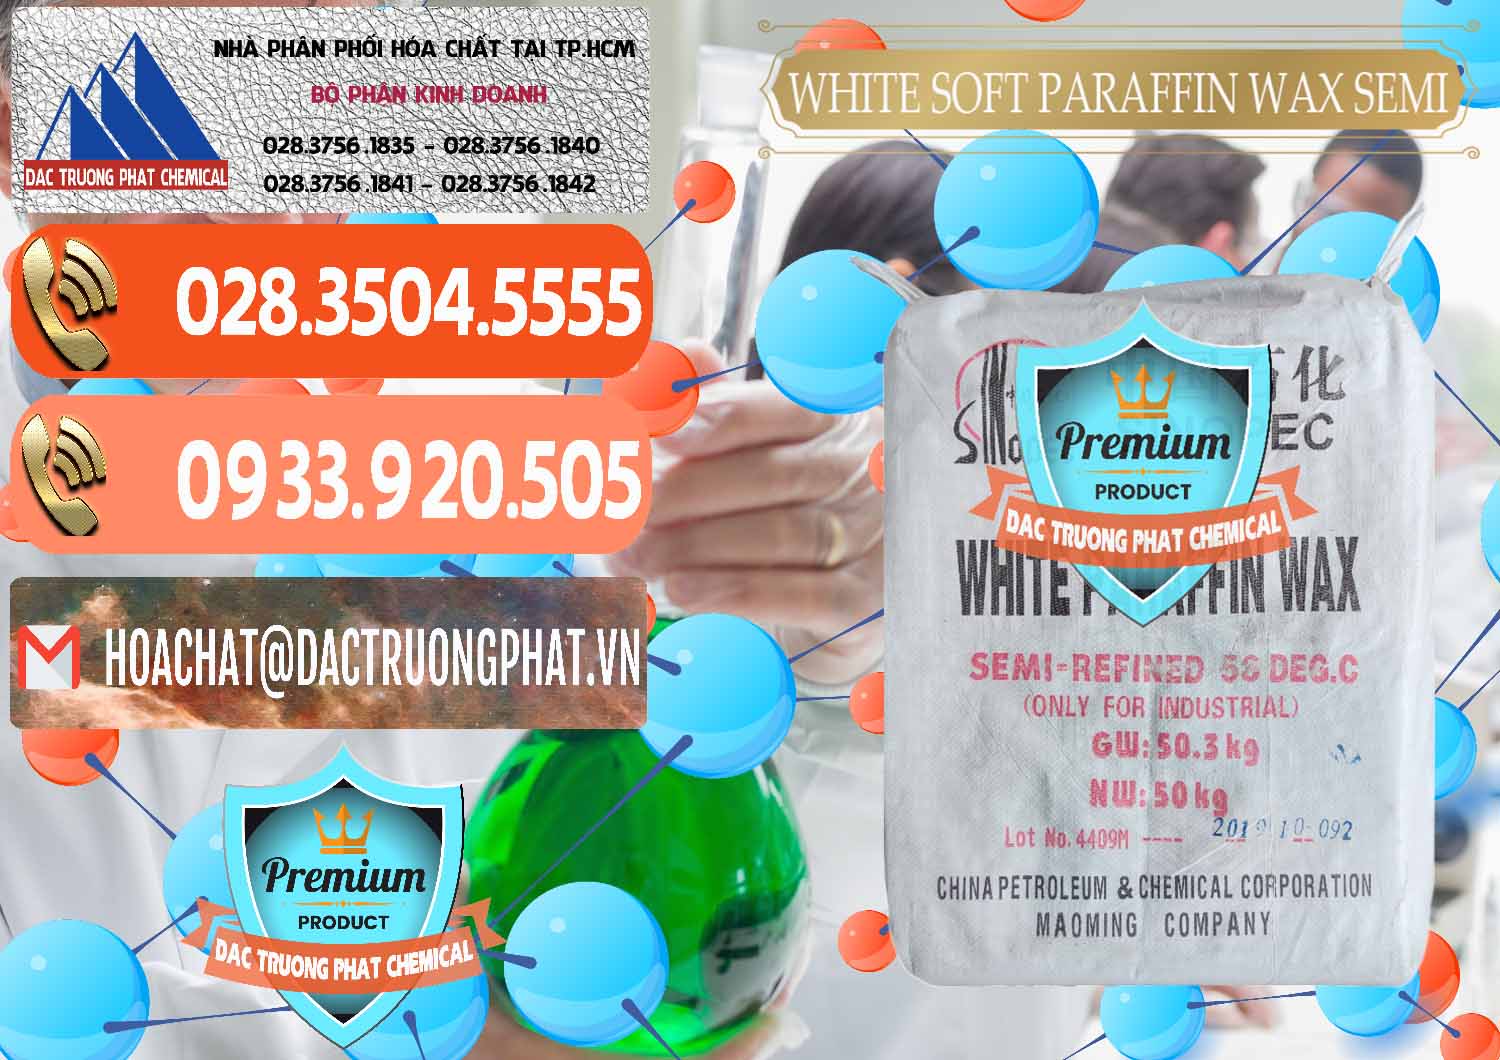 Chuyên bán & phân phối Sáp Paraffin Wax Sinopec Trung Quốc China - 0328 - Nhà cung cấp - nhập khẩu hóa chất tại TP.HCM - hoachatmientay.com